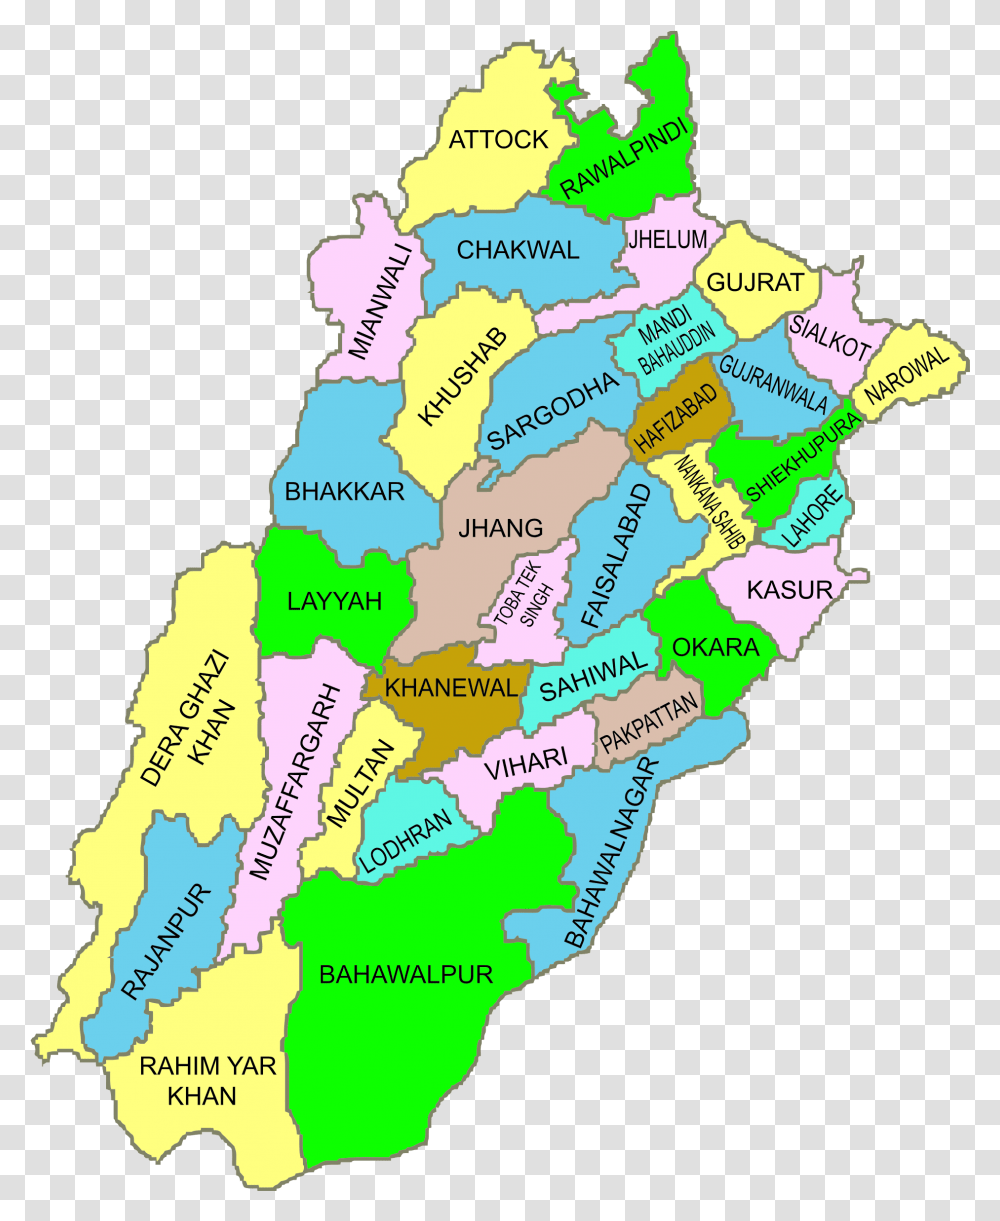 Pakistan Map Map Of Punjab Districts Pakistan, Diagram, Plot, Atlas Transparent Png